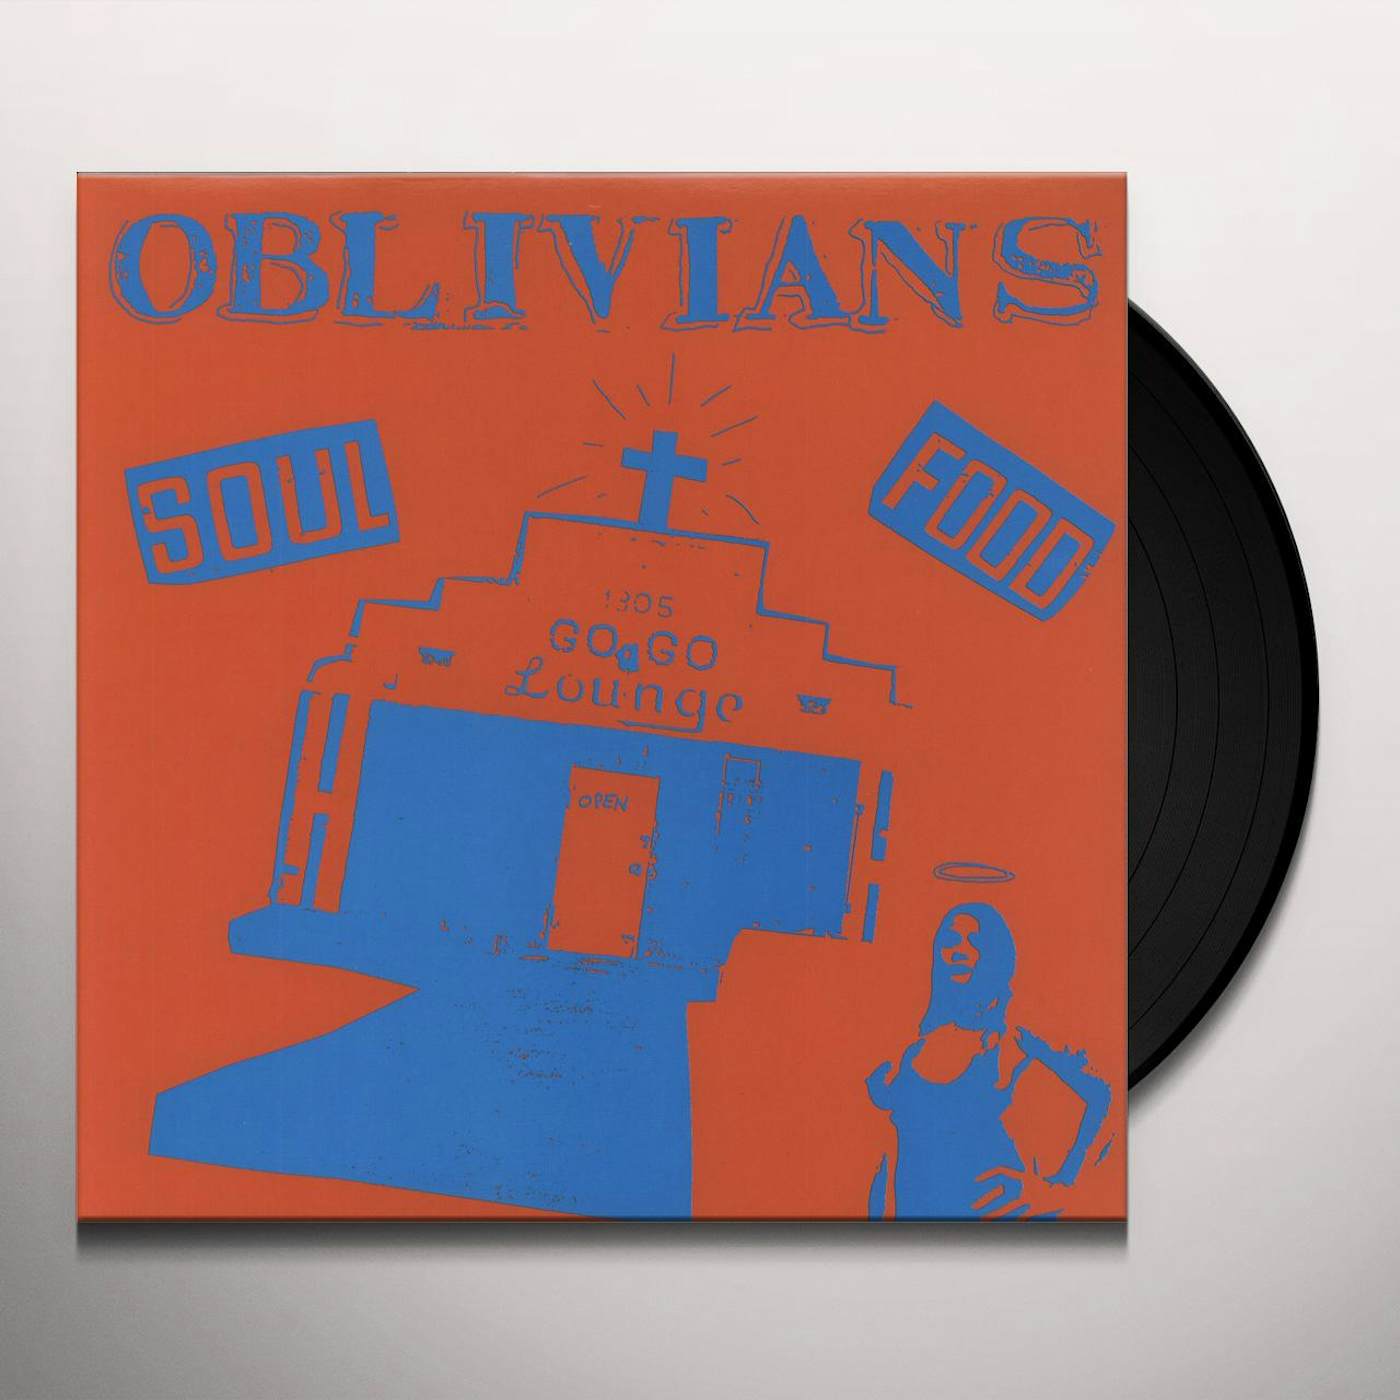 Oblivians Soul Food Vinyl Record